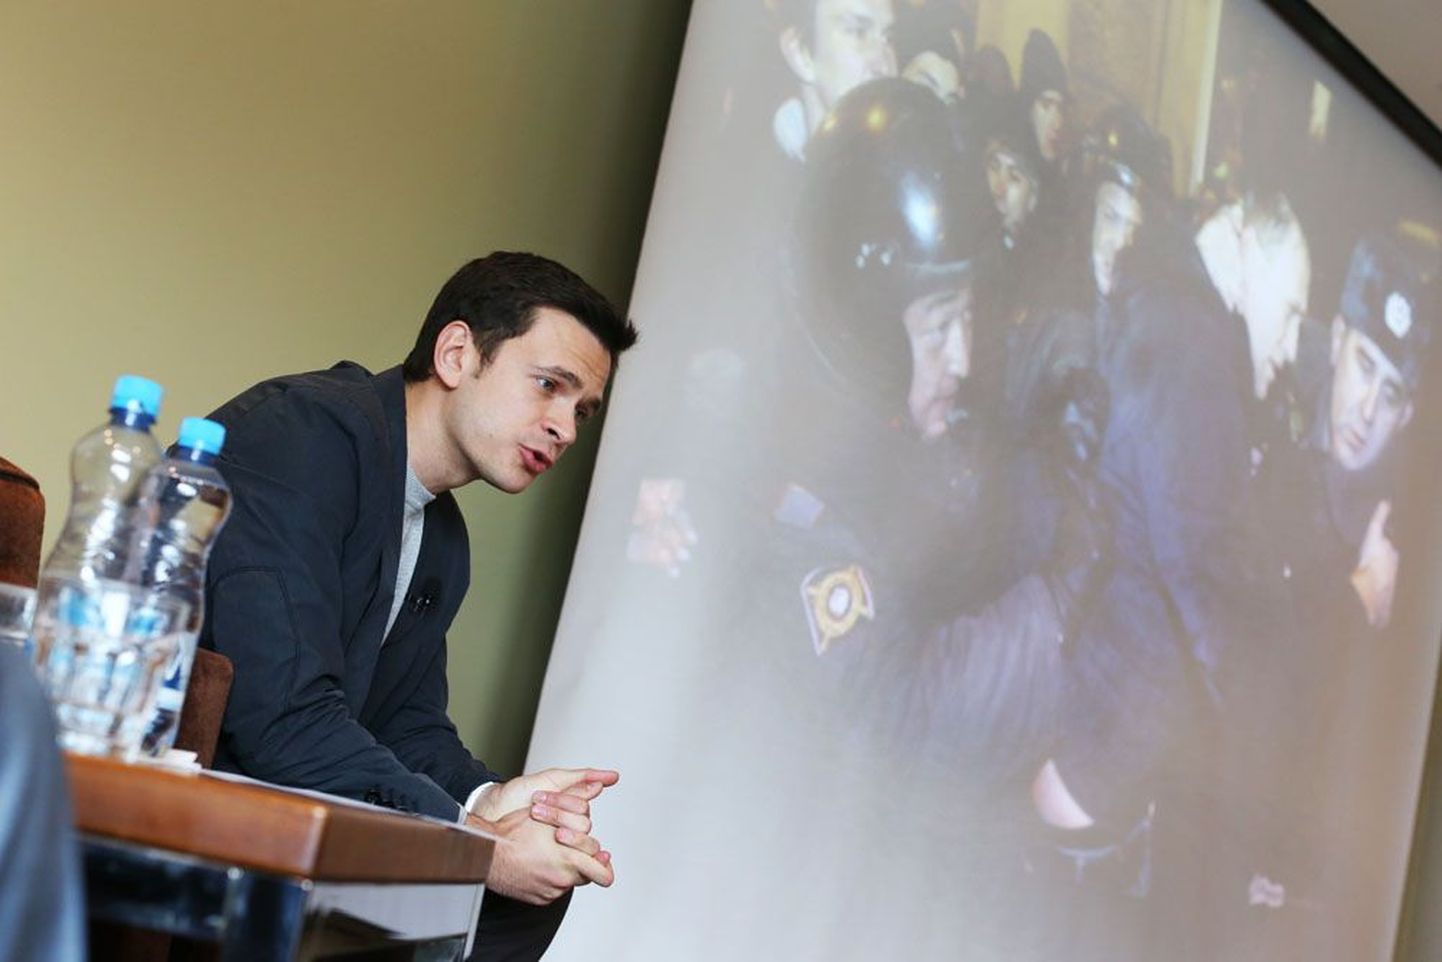 Ilja Jašini ettekannet Tallinnas  illustreerisid fotod Vene politsei jõukasutamisest opositsiooni meeleavaldustel.